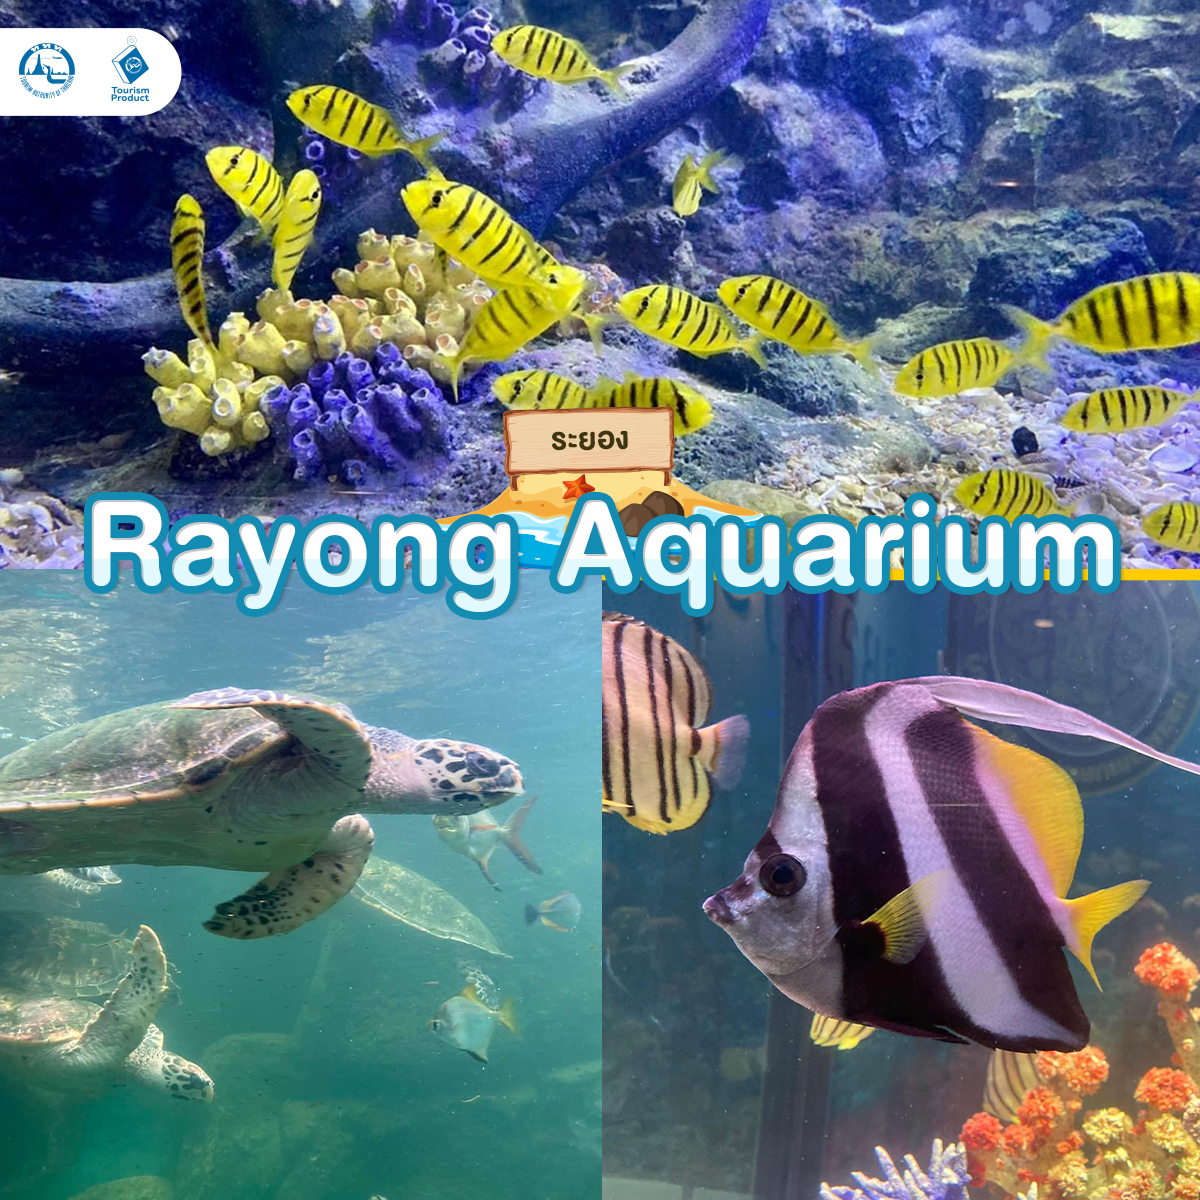 ท่องโลกใต้ทะเล 6 อควาเรียม มหัศจรรย์ใต้น้ำ Rayong Aquarium